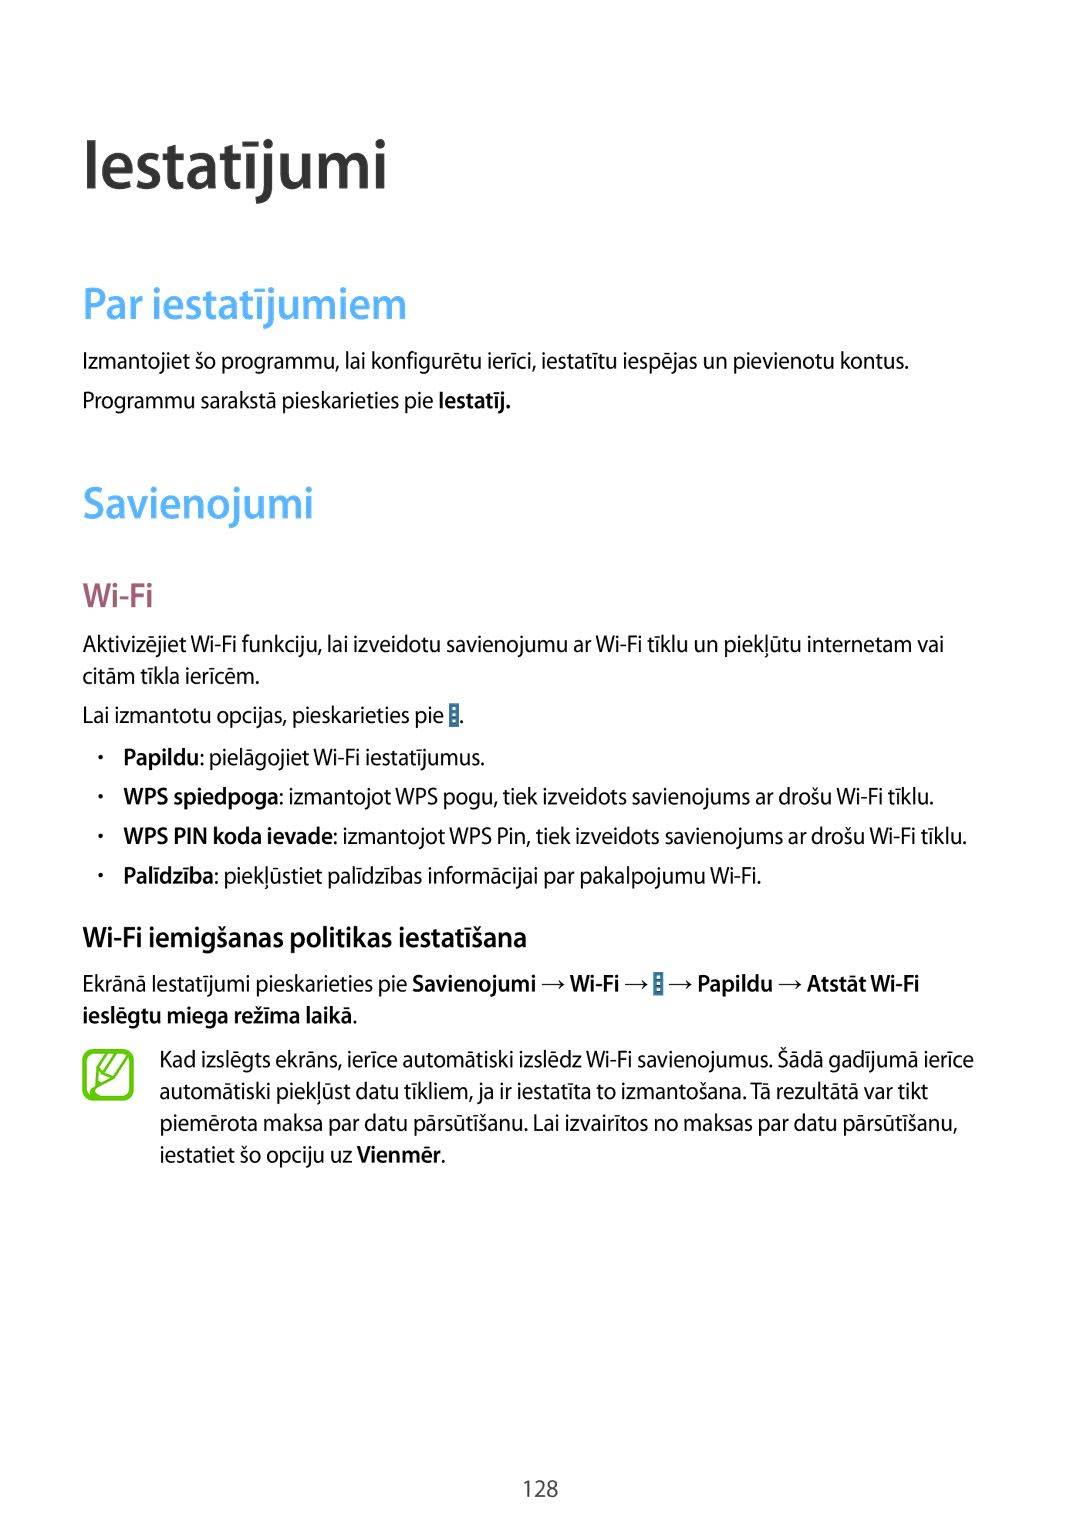 Samsung SM-T525NZWASEB manual Iestatījumi, Par iestatījumiem, Savienojumi, Wi-Fi iemigšanas politikas iestatīšana 